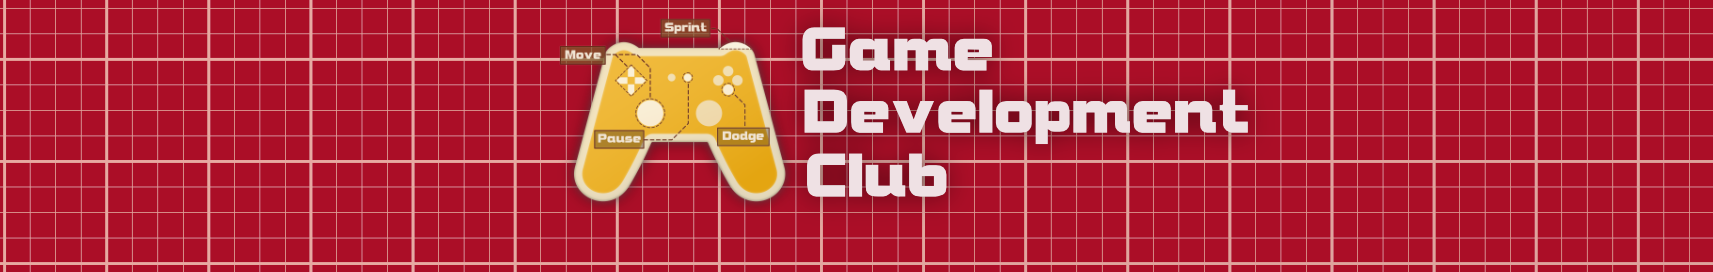 Game Development Club Header